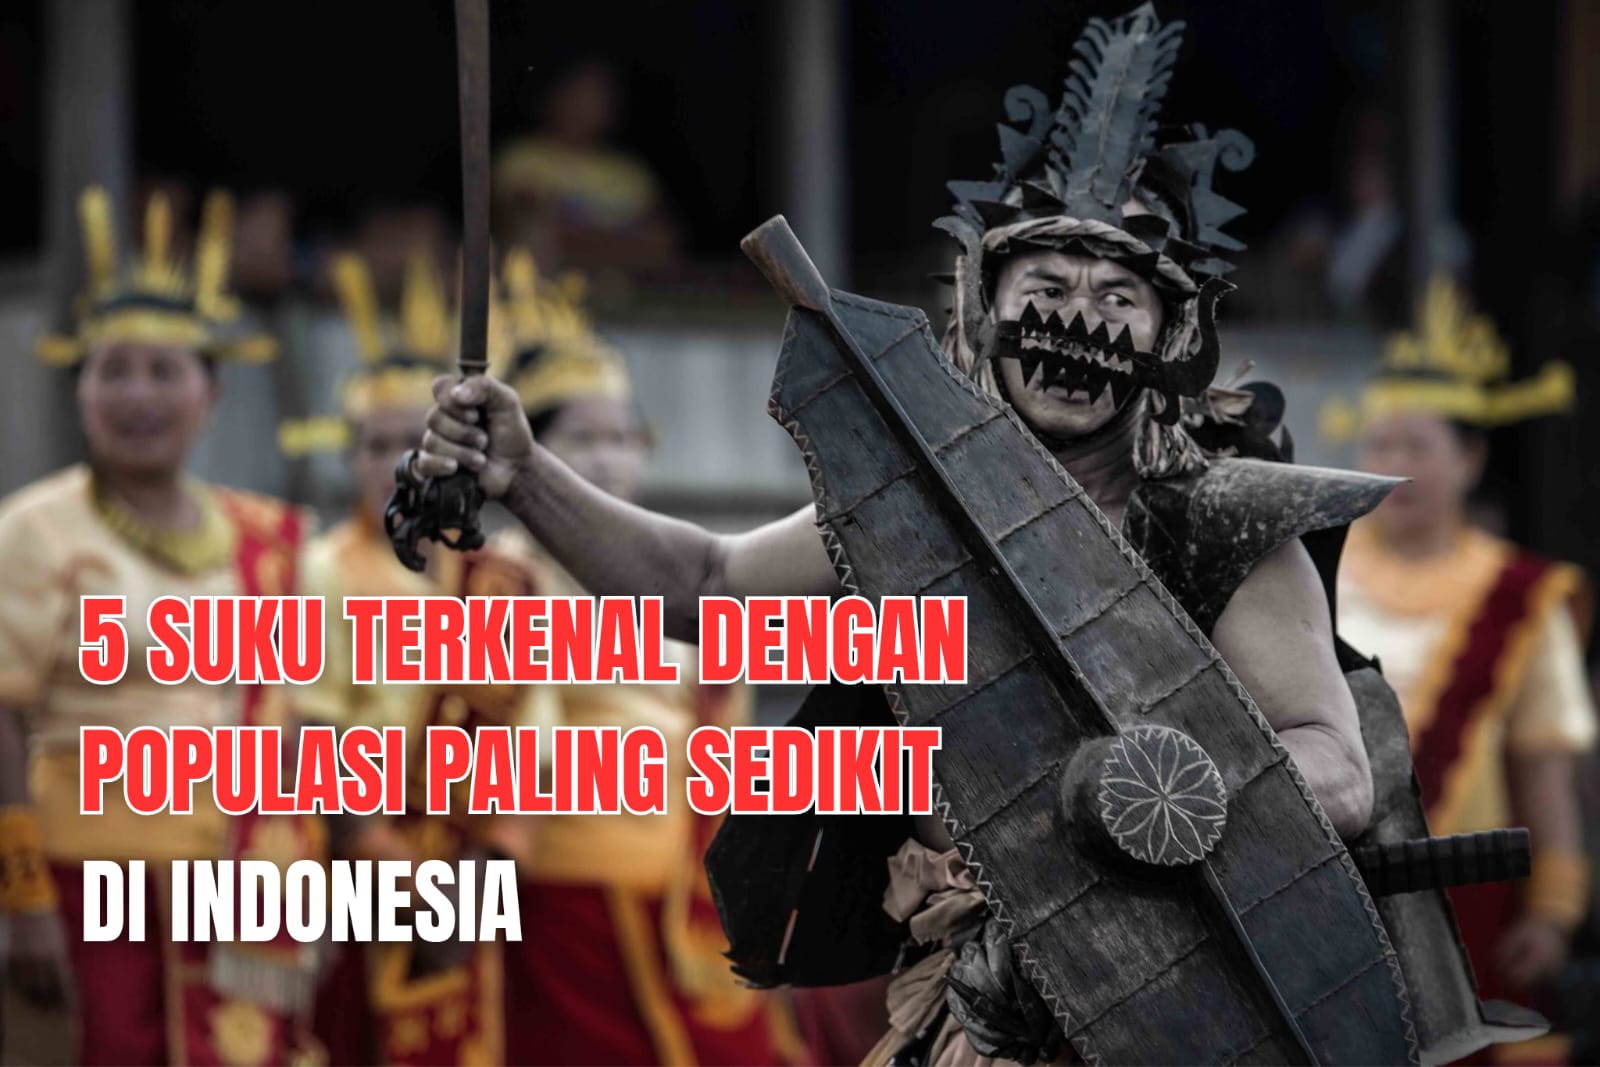 No 1 Bukan Nias, Berikut 5 Suku Terkenal dengan Populasi Paling Sedikit di Indonesia!